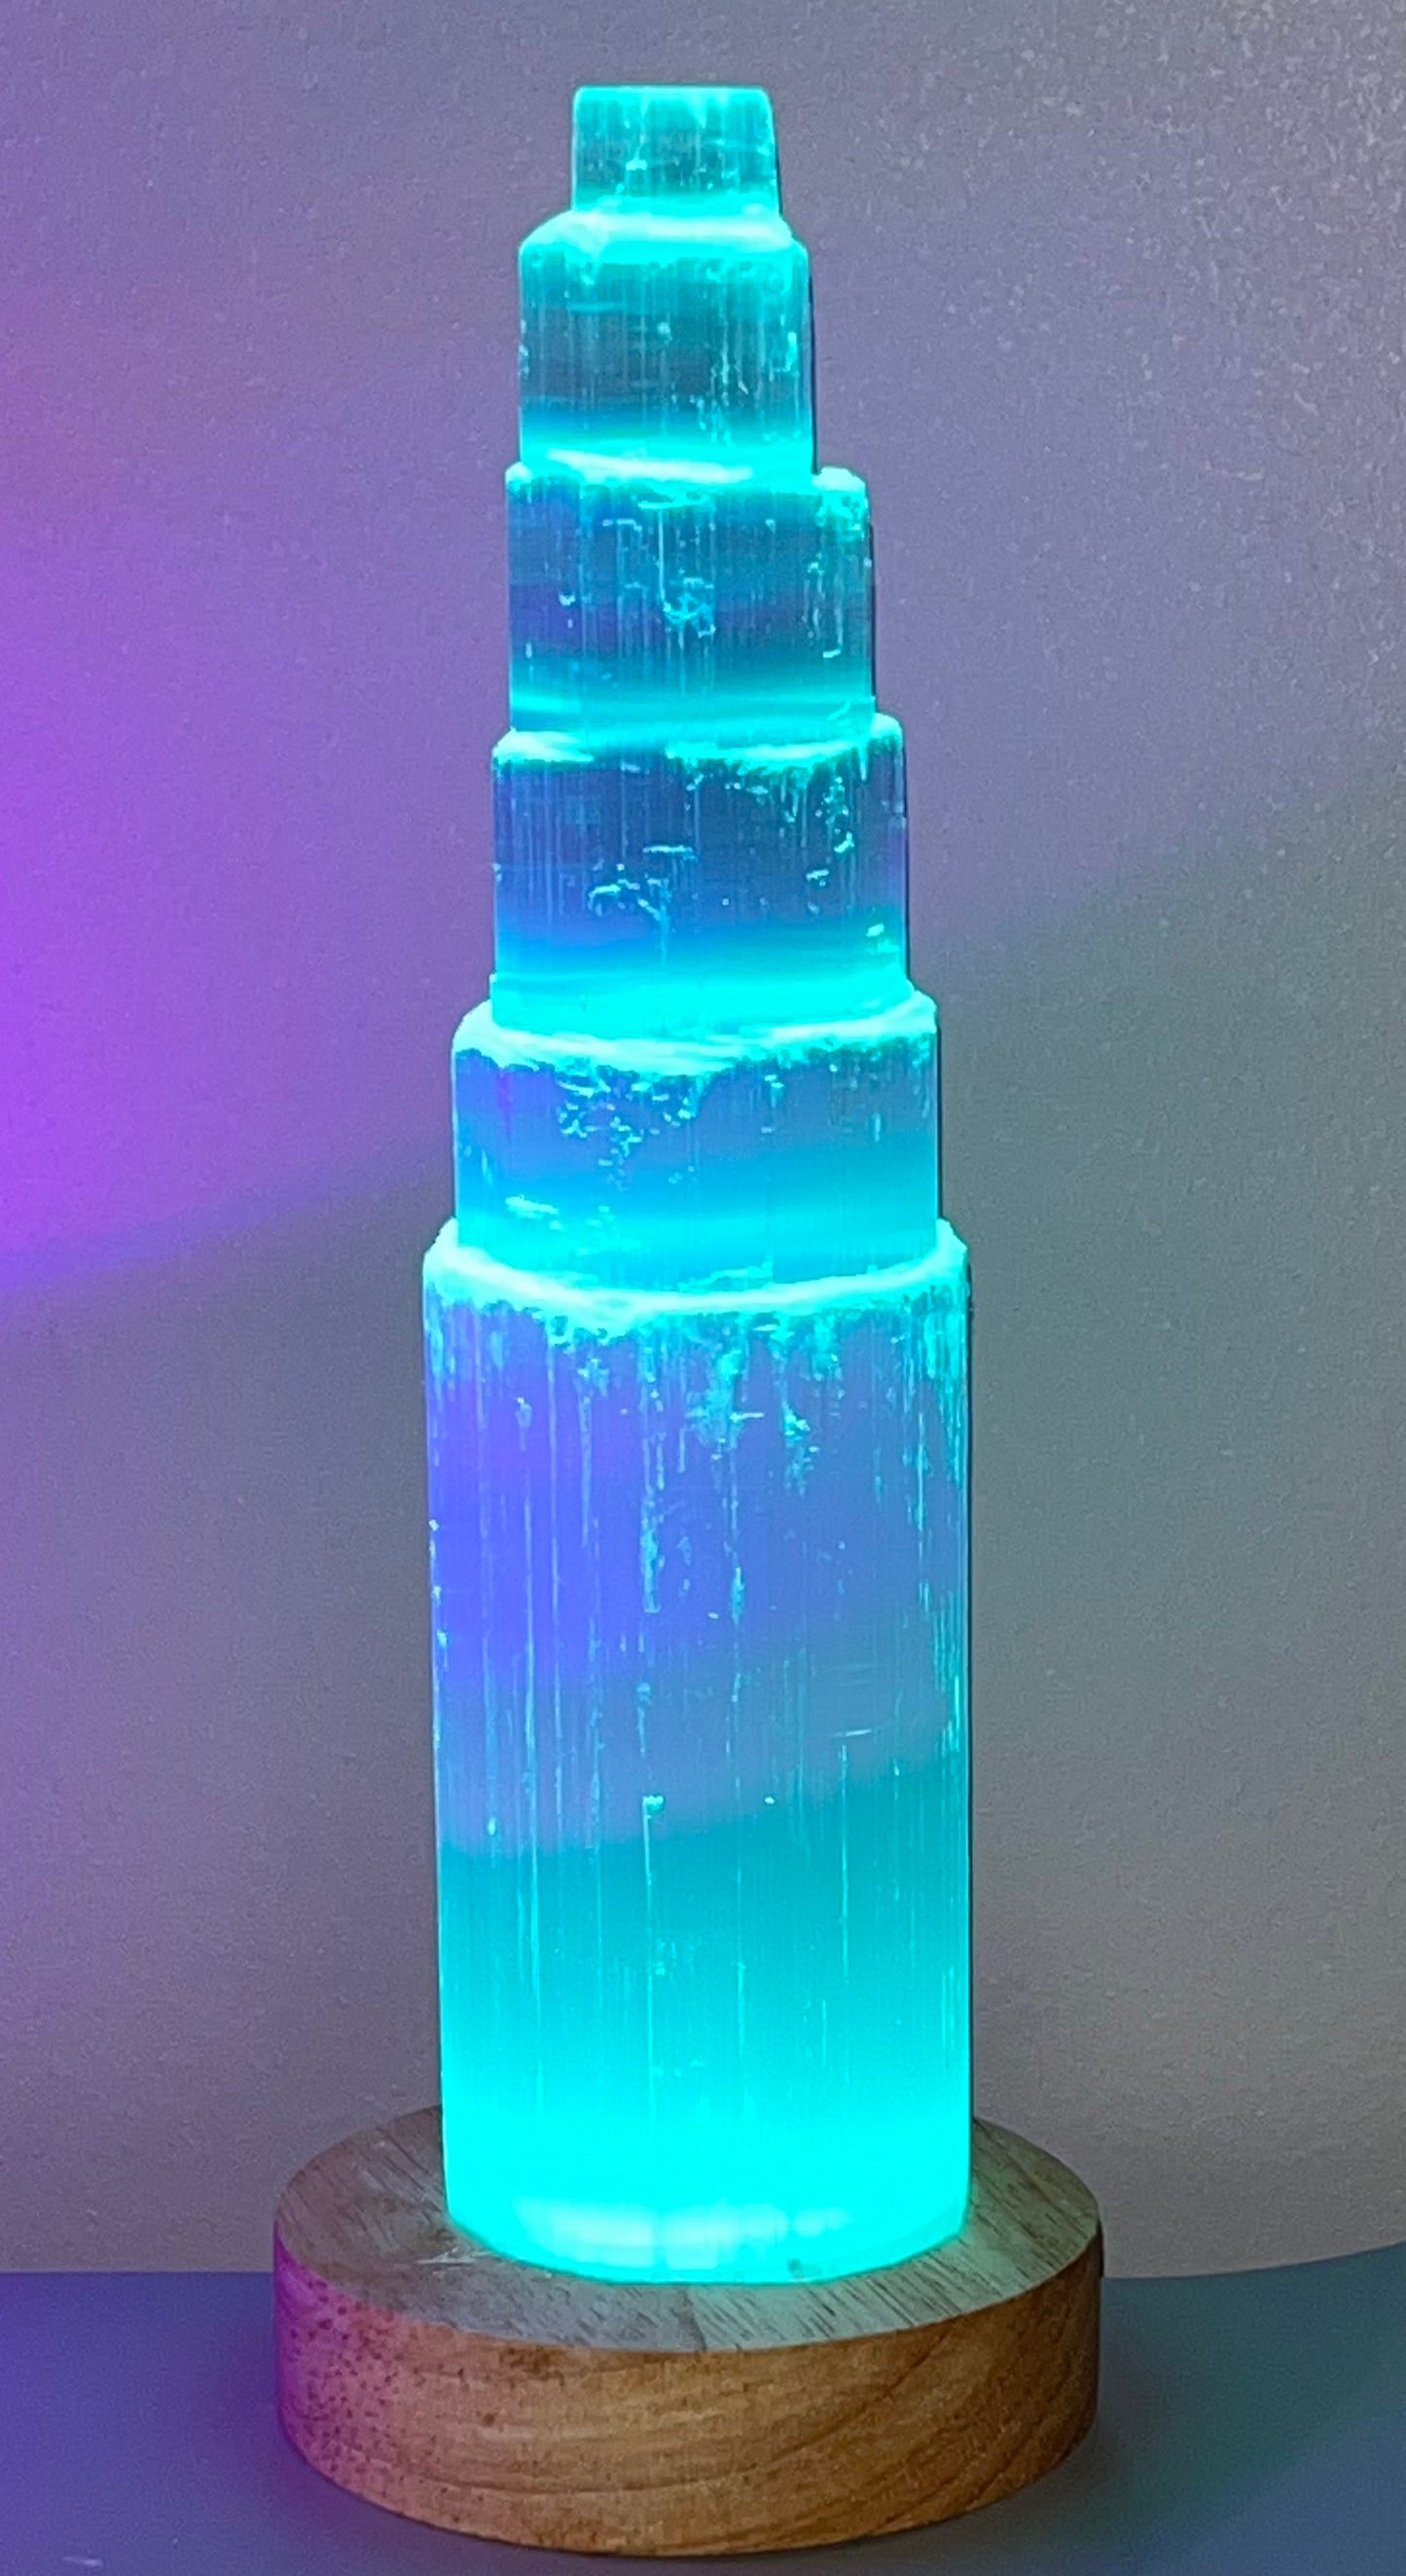 Selenite Lamp, Colored